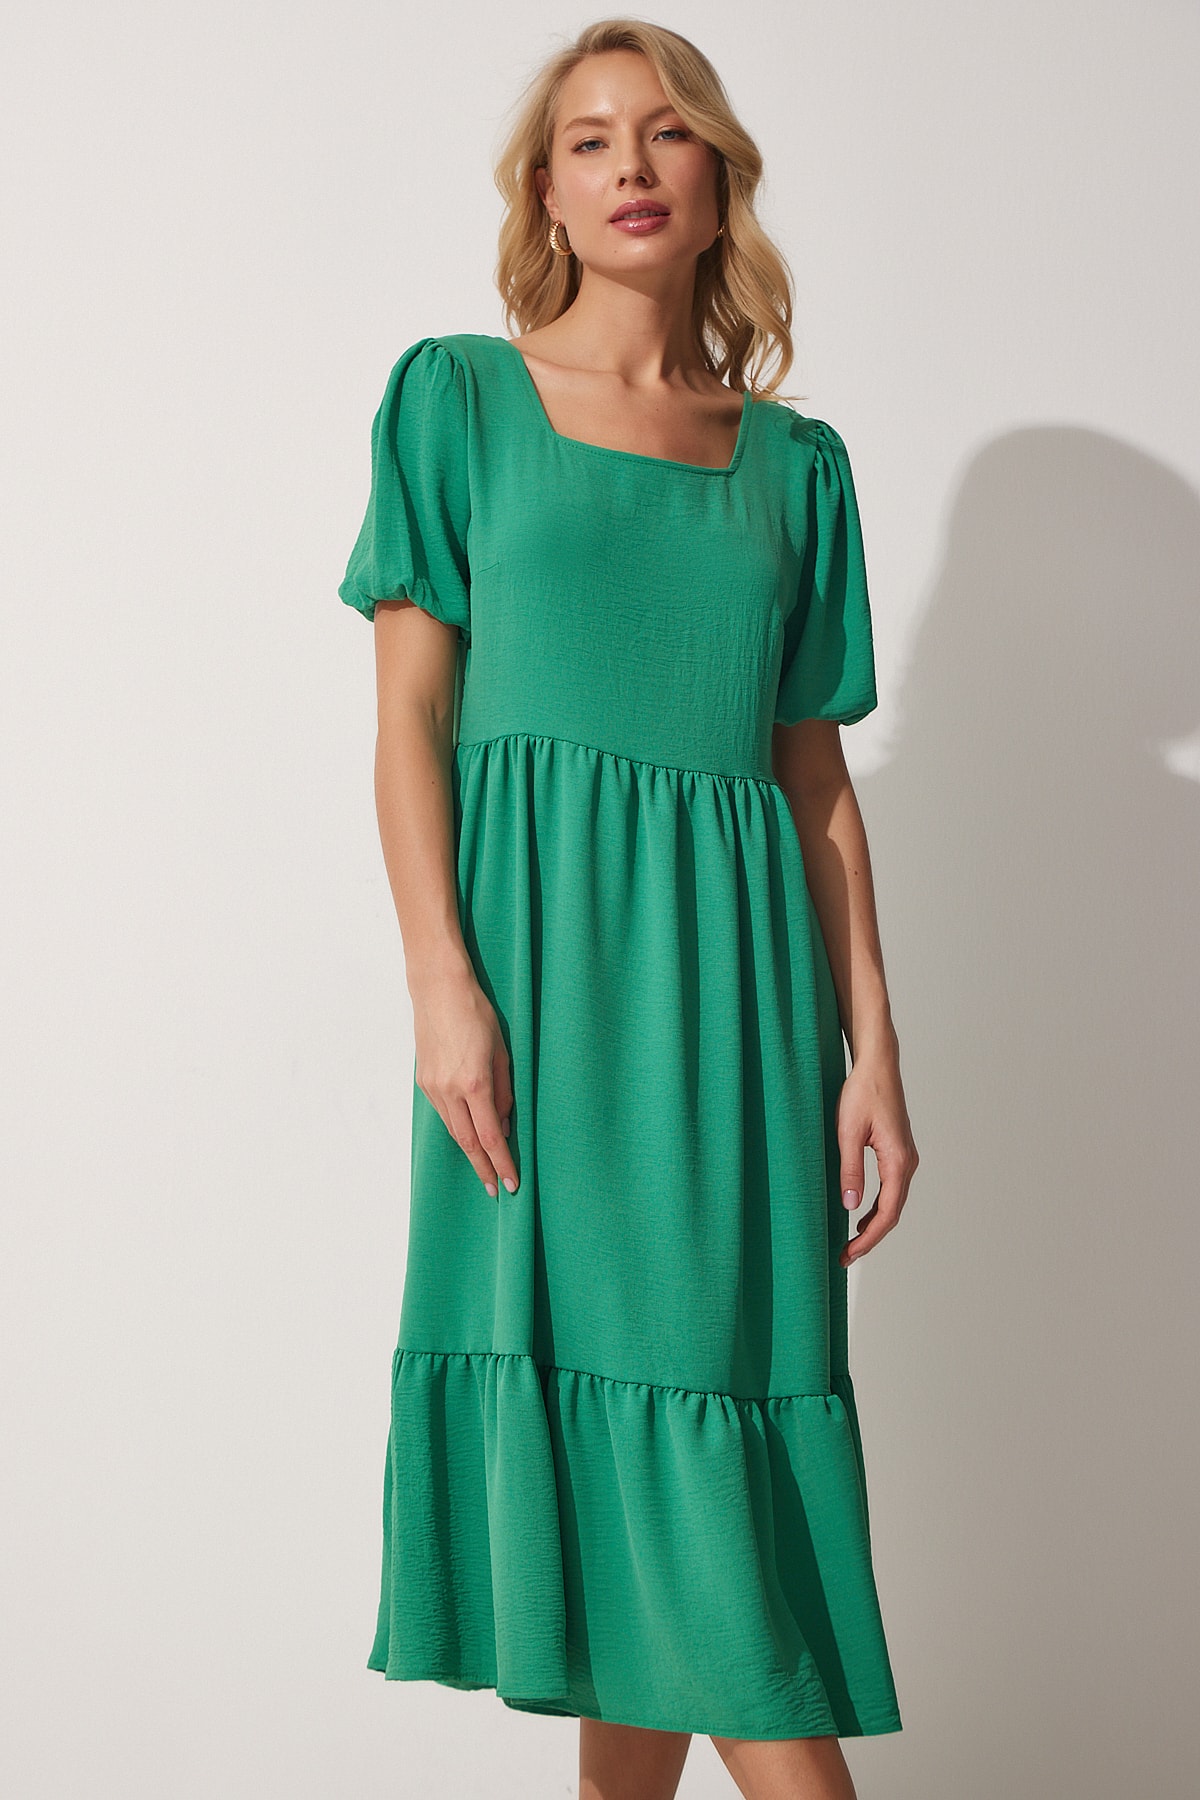 цена Женское летнее платье Airobin ярко-зеленого цвета с квадратным воротником Happiness İstanbul, зеленый